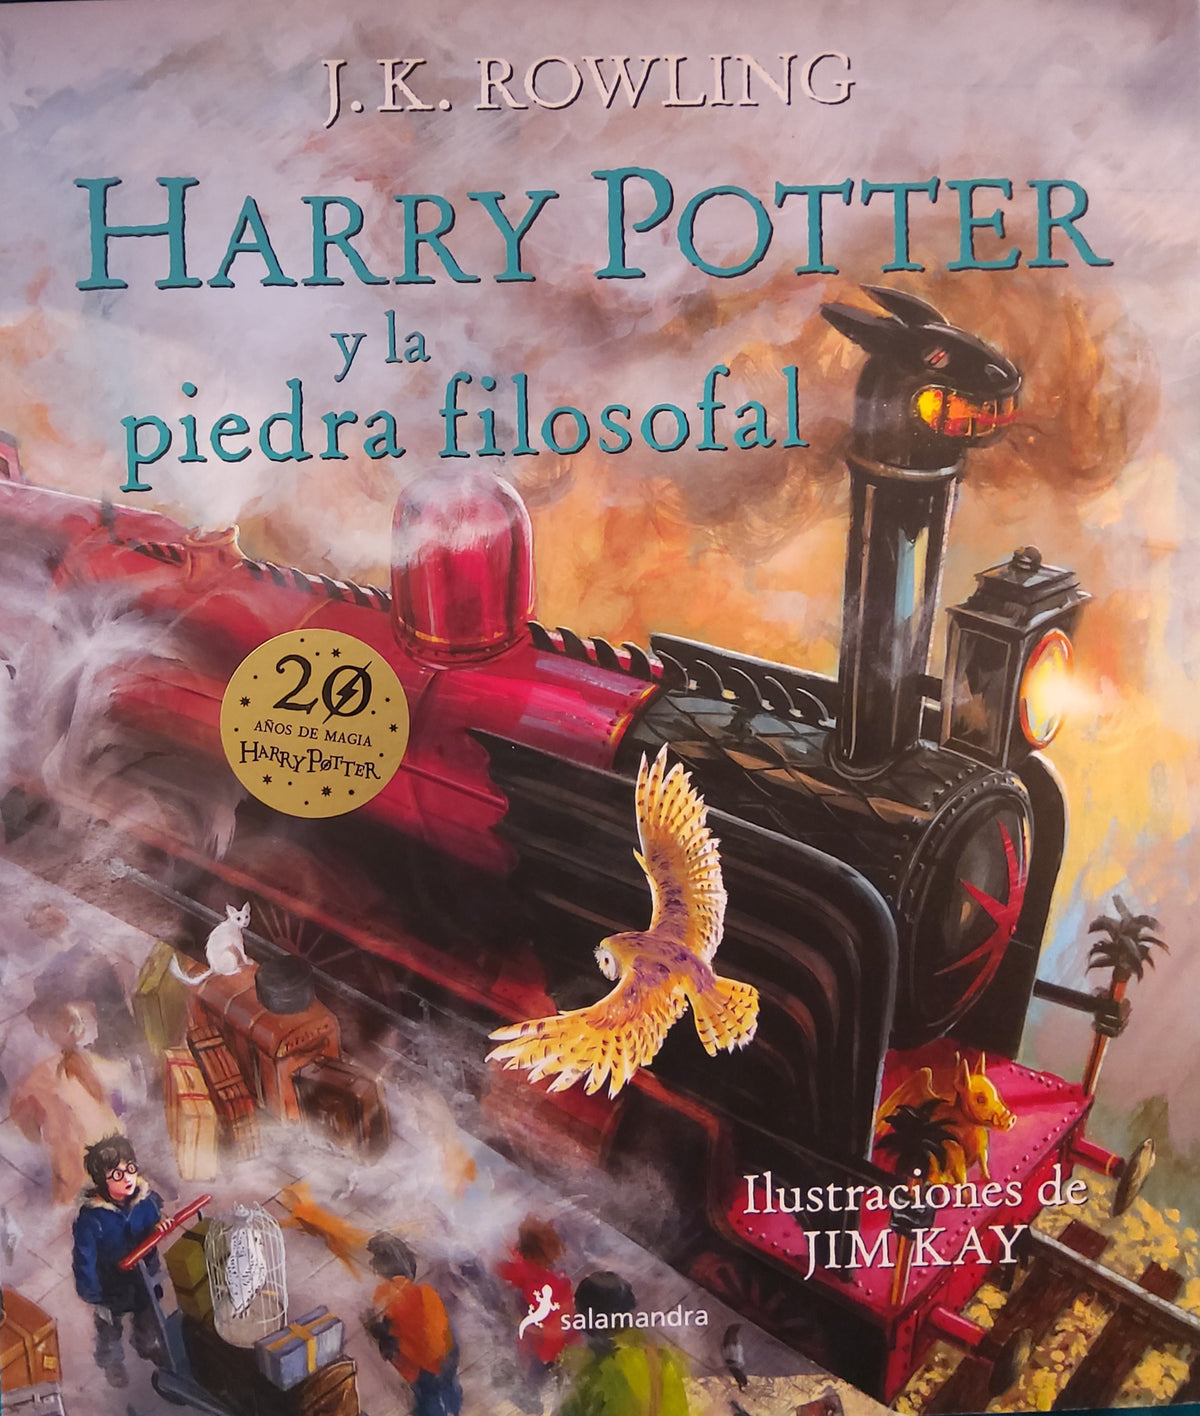 Harry Potter y la piedra filosofal (ilustrado) Spanish